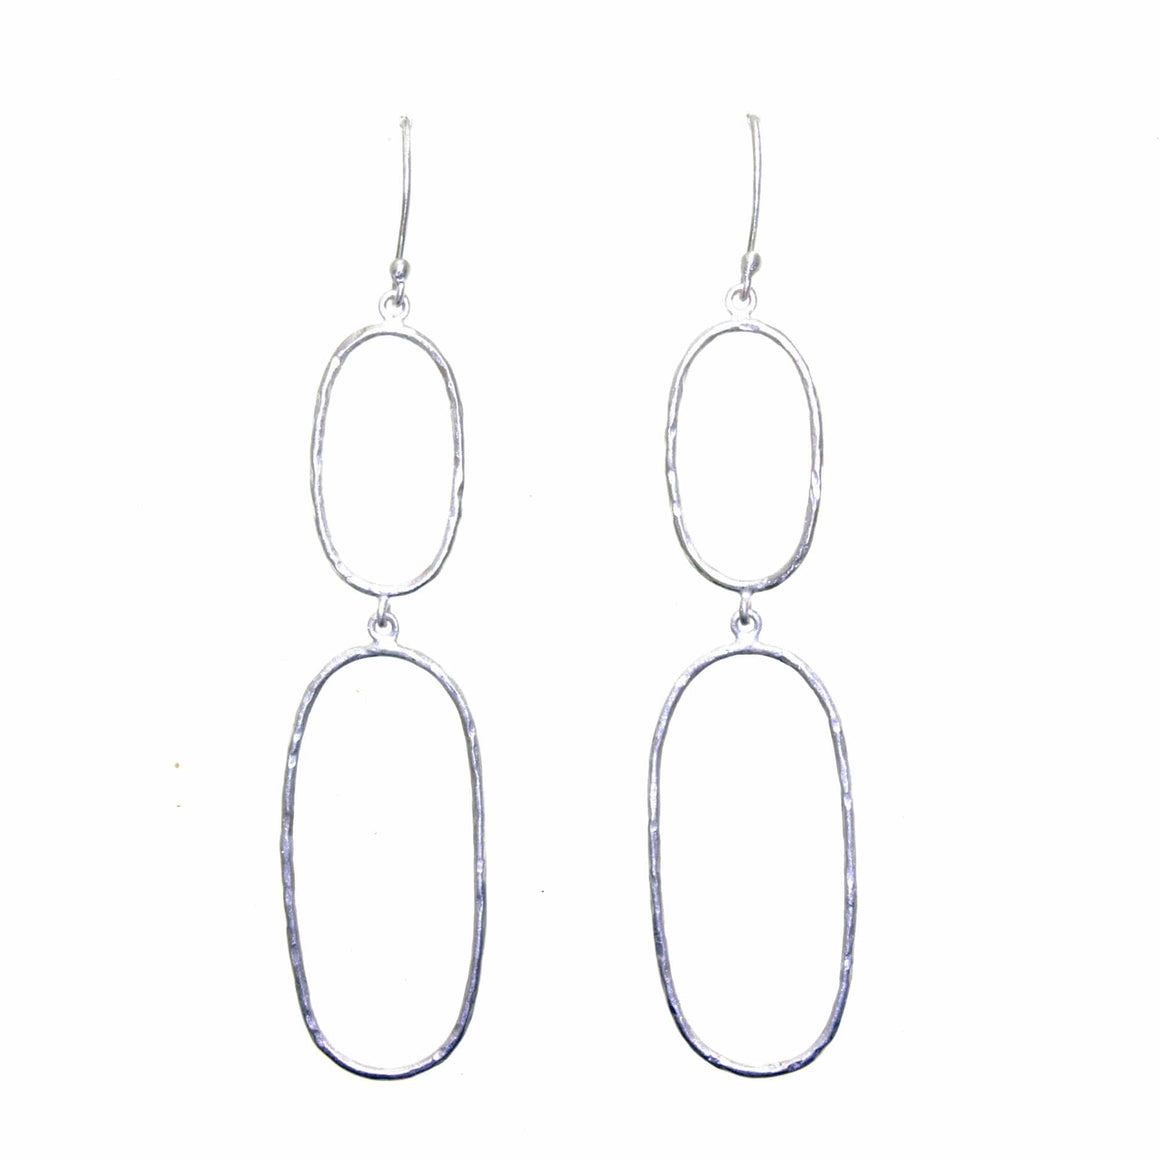 Manjusha Jewels earrings Silver Oval Earrings